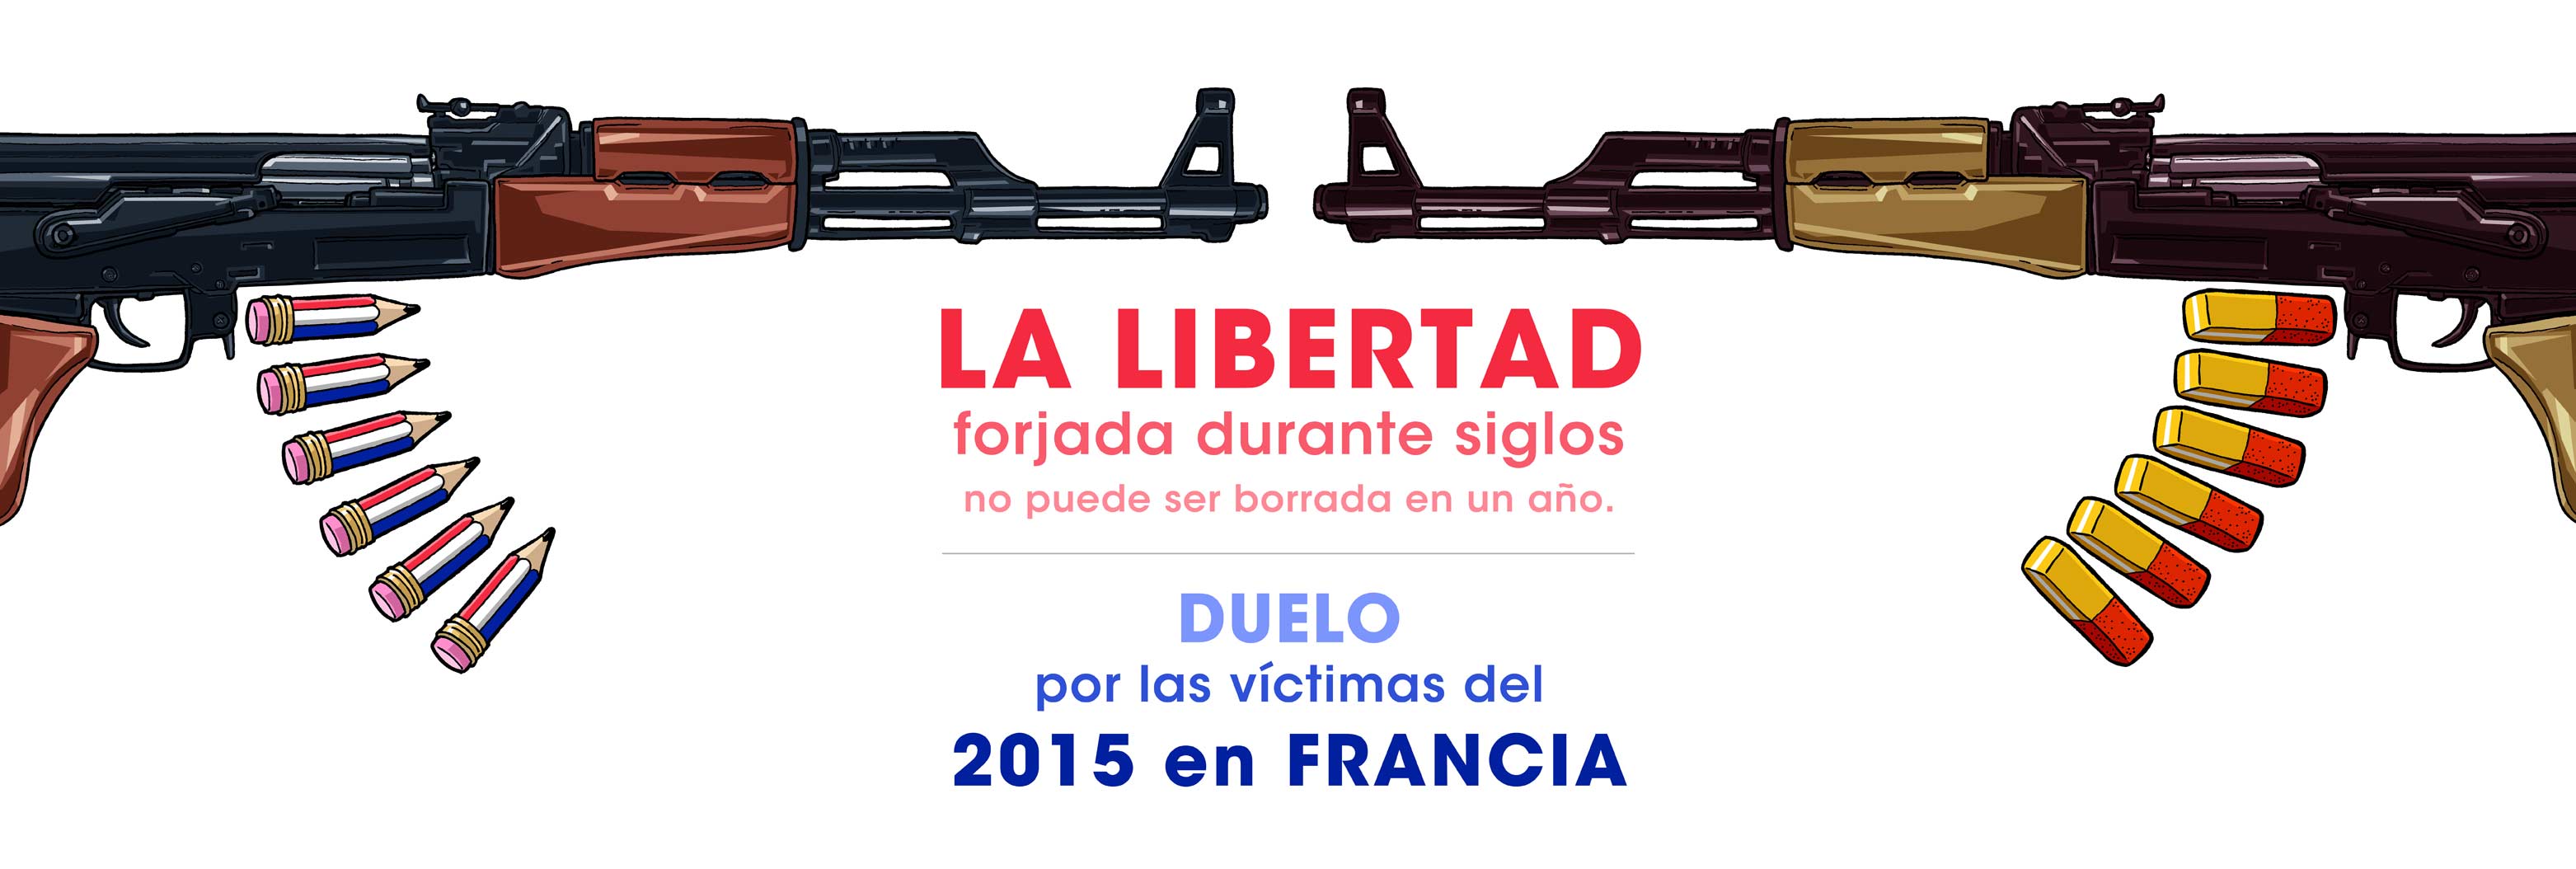 DUELO por las víctimas del 2015 en FRANCIA